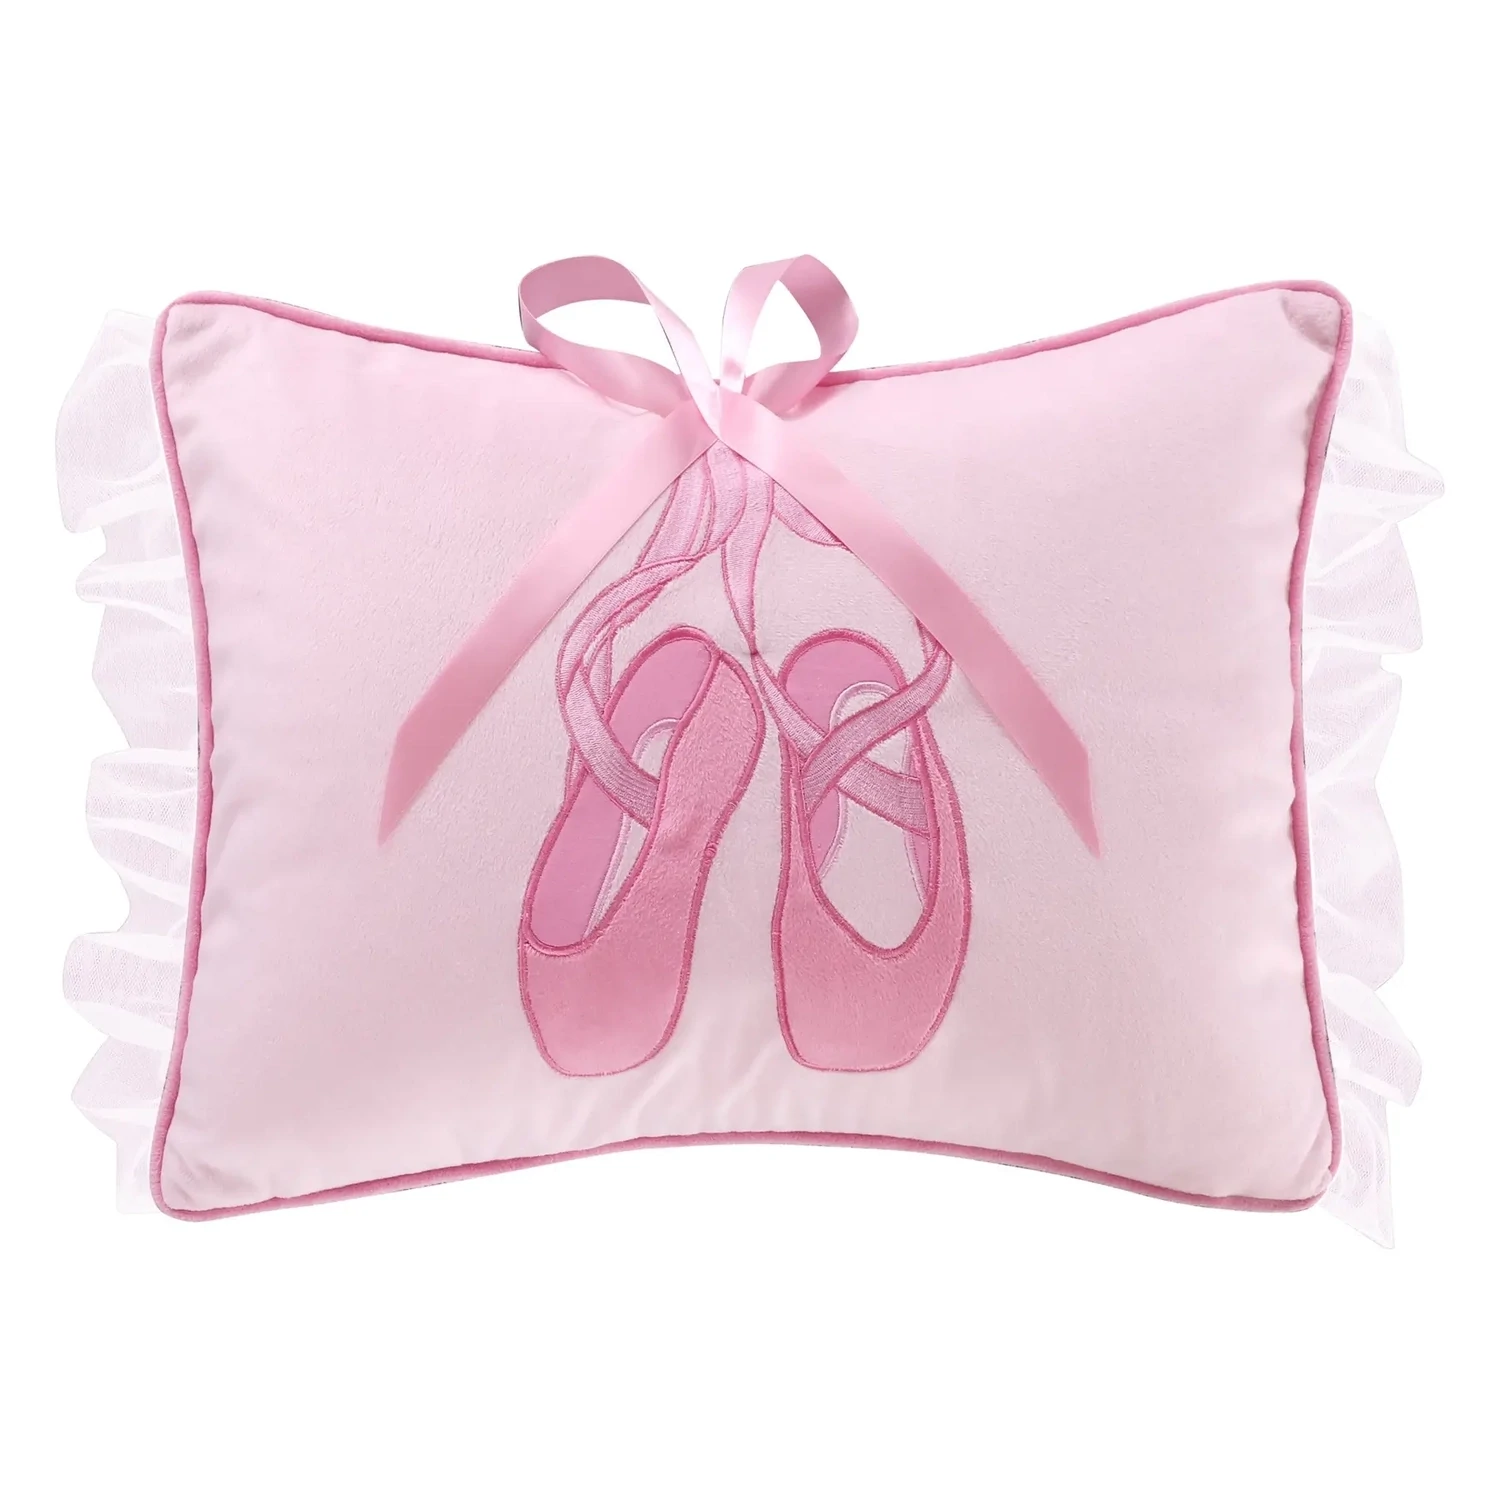 Ballerina Slippers Pillow L25901P-A